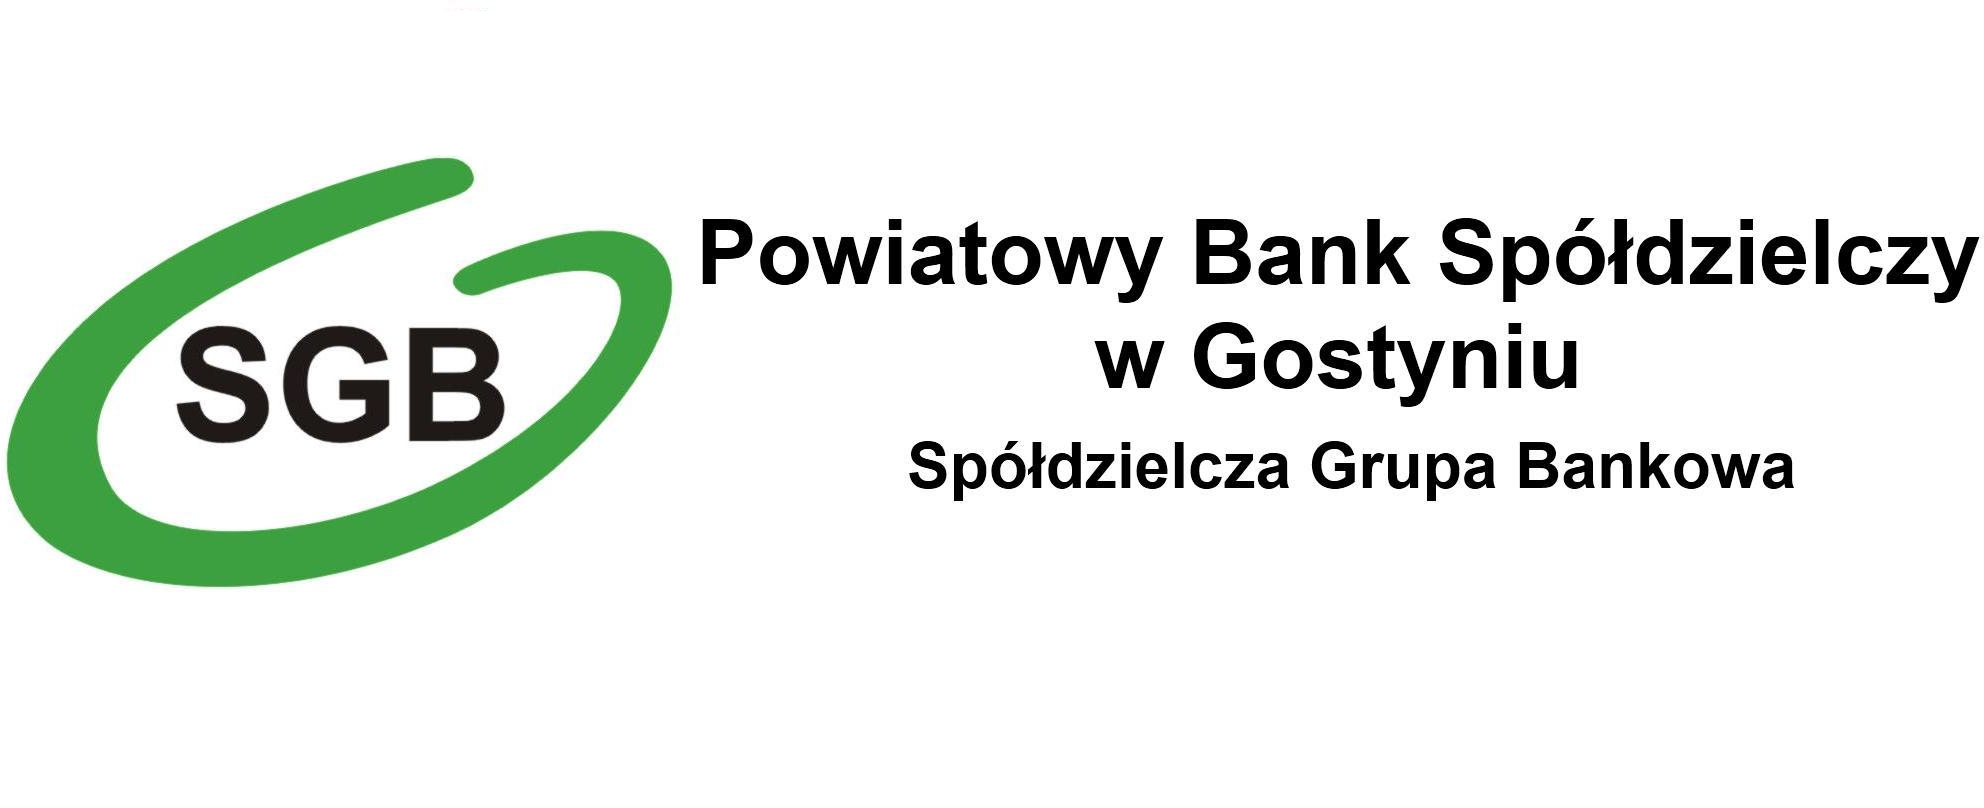 Kalkulator kredytowy - Powiatowy Bank Spółdzielczy w Gostyniu